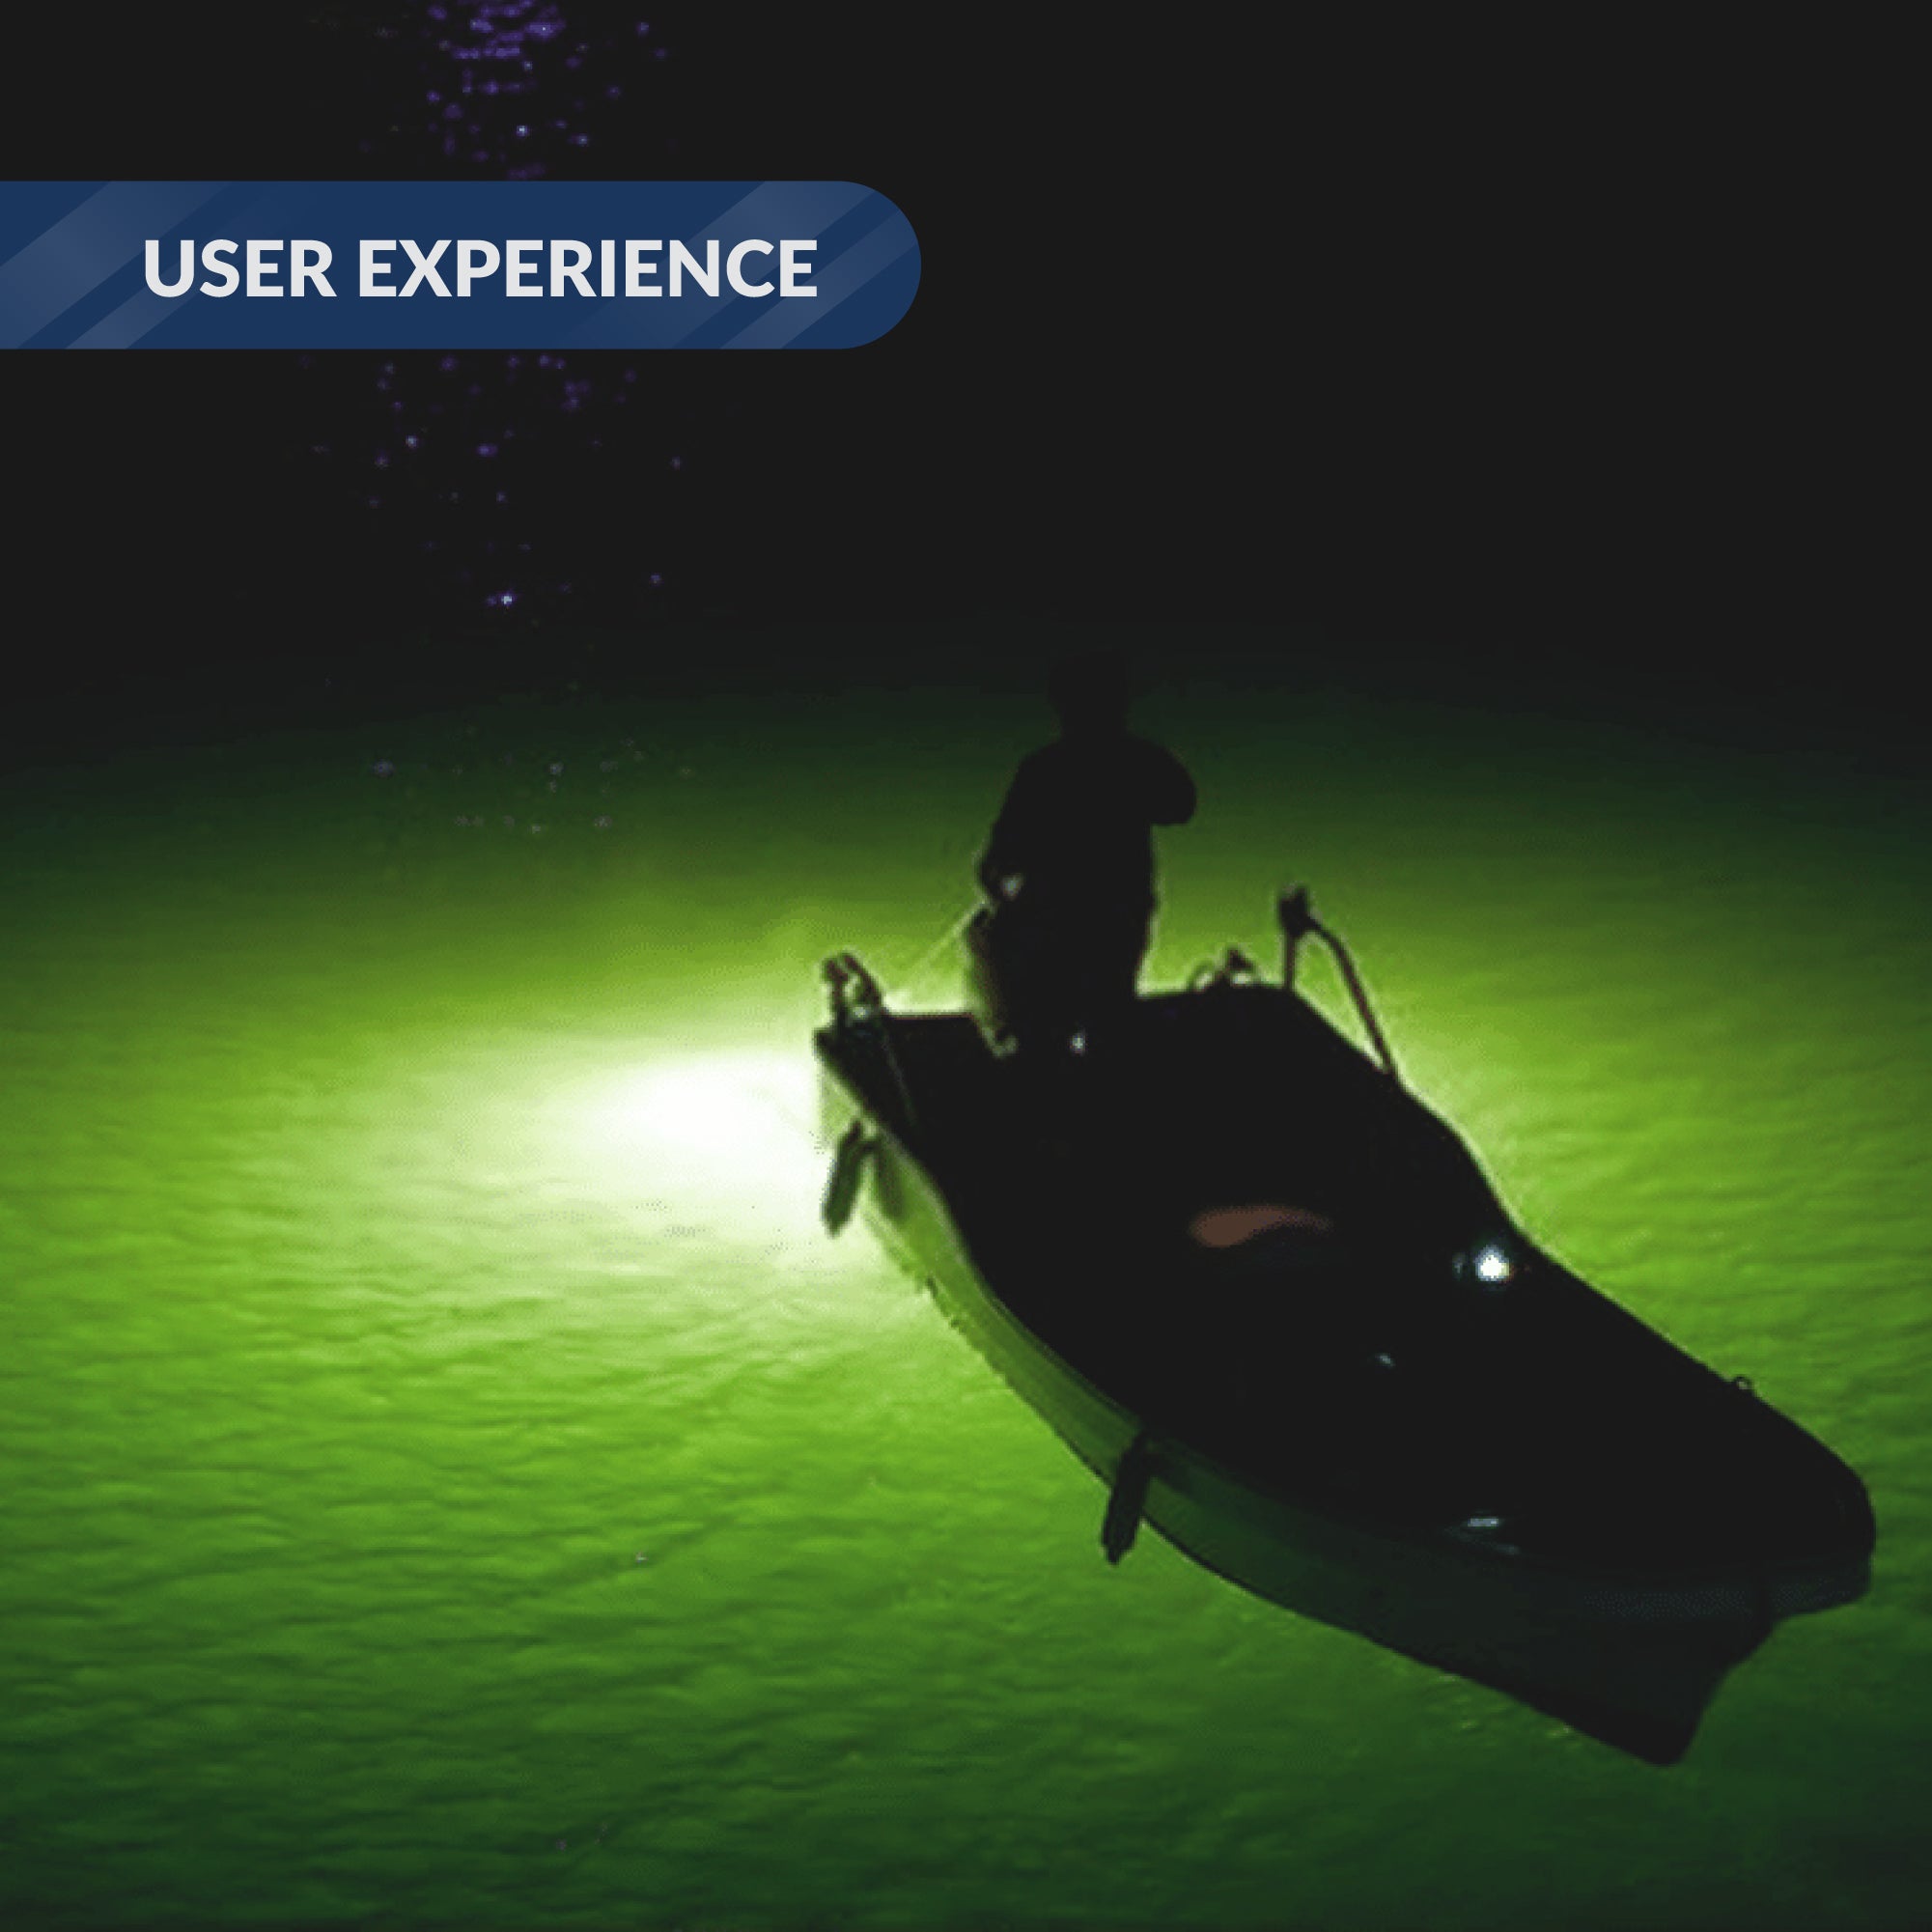 Underwater Fishing Light, Green LED, 17' Power Cord, 10-30V - FO4387